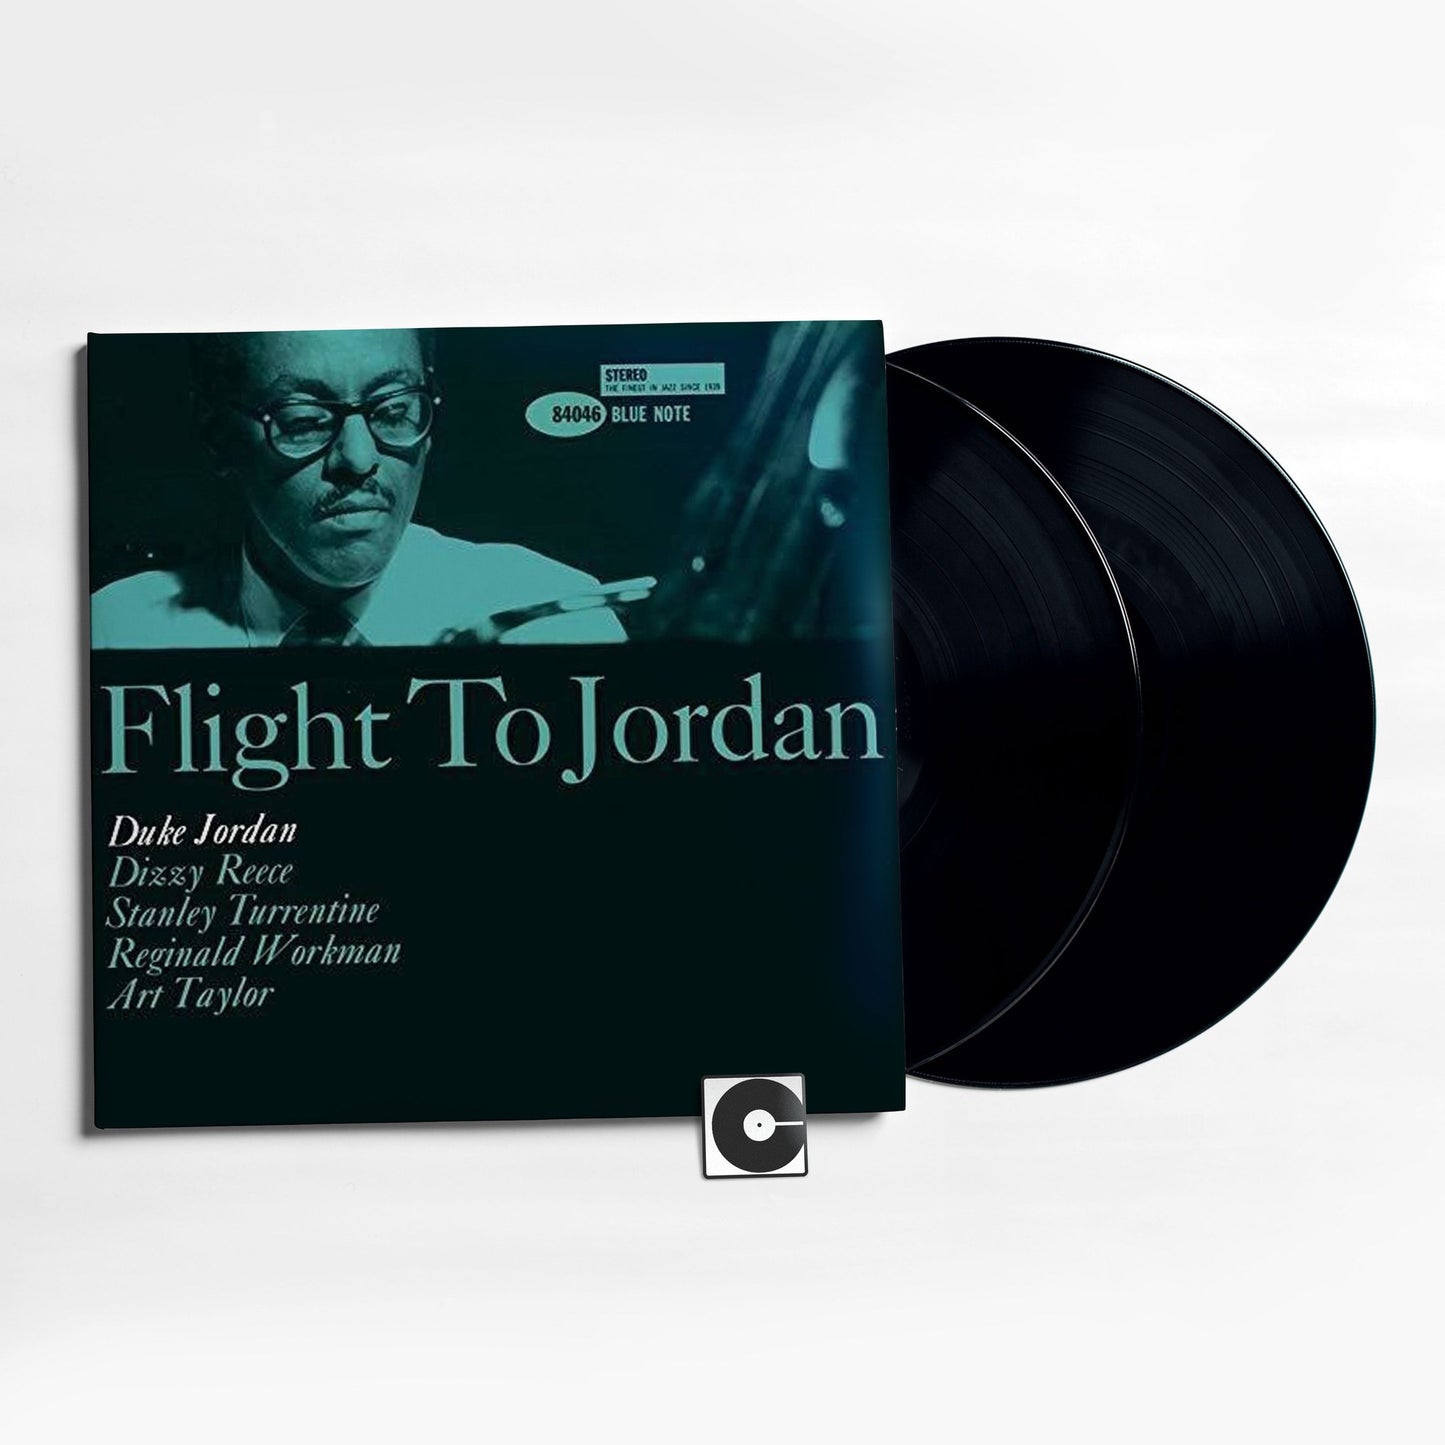 Duke Jordan - "Flight To Jordan" Analogue Productions